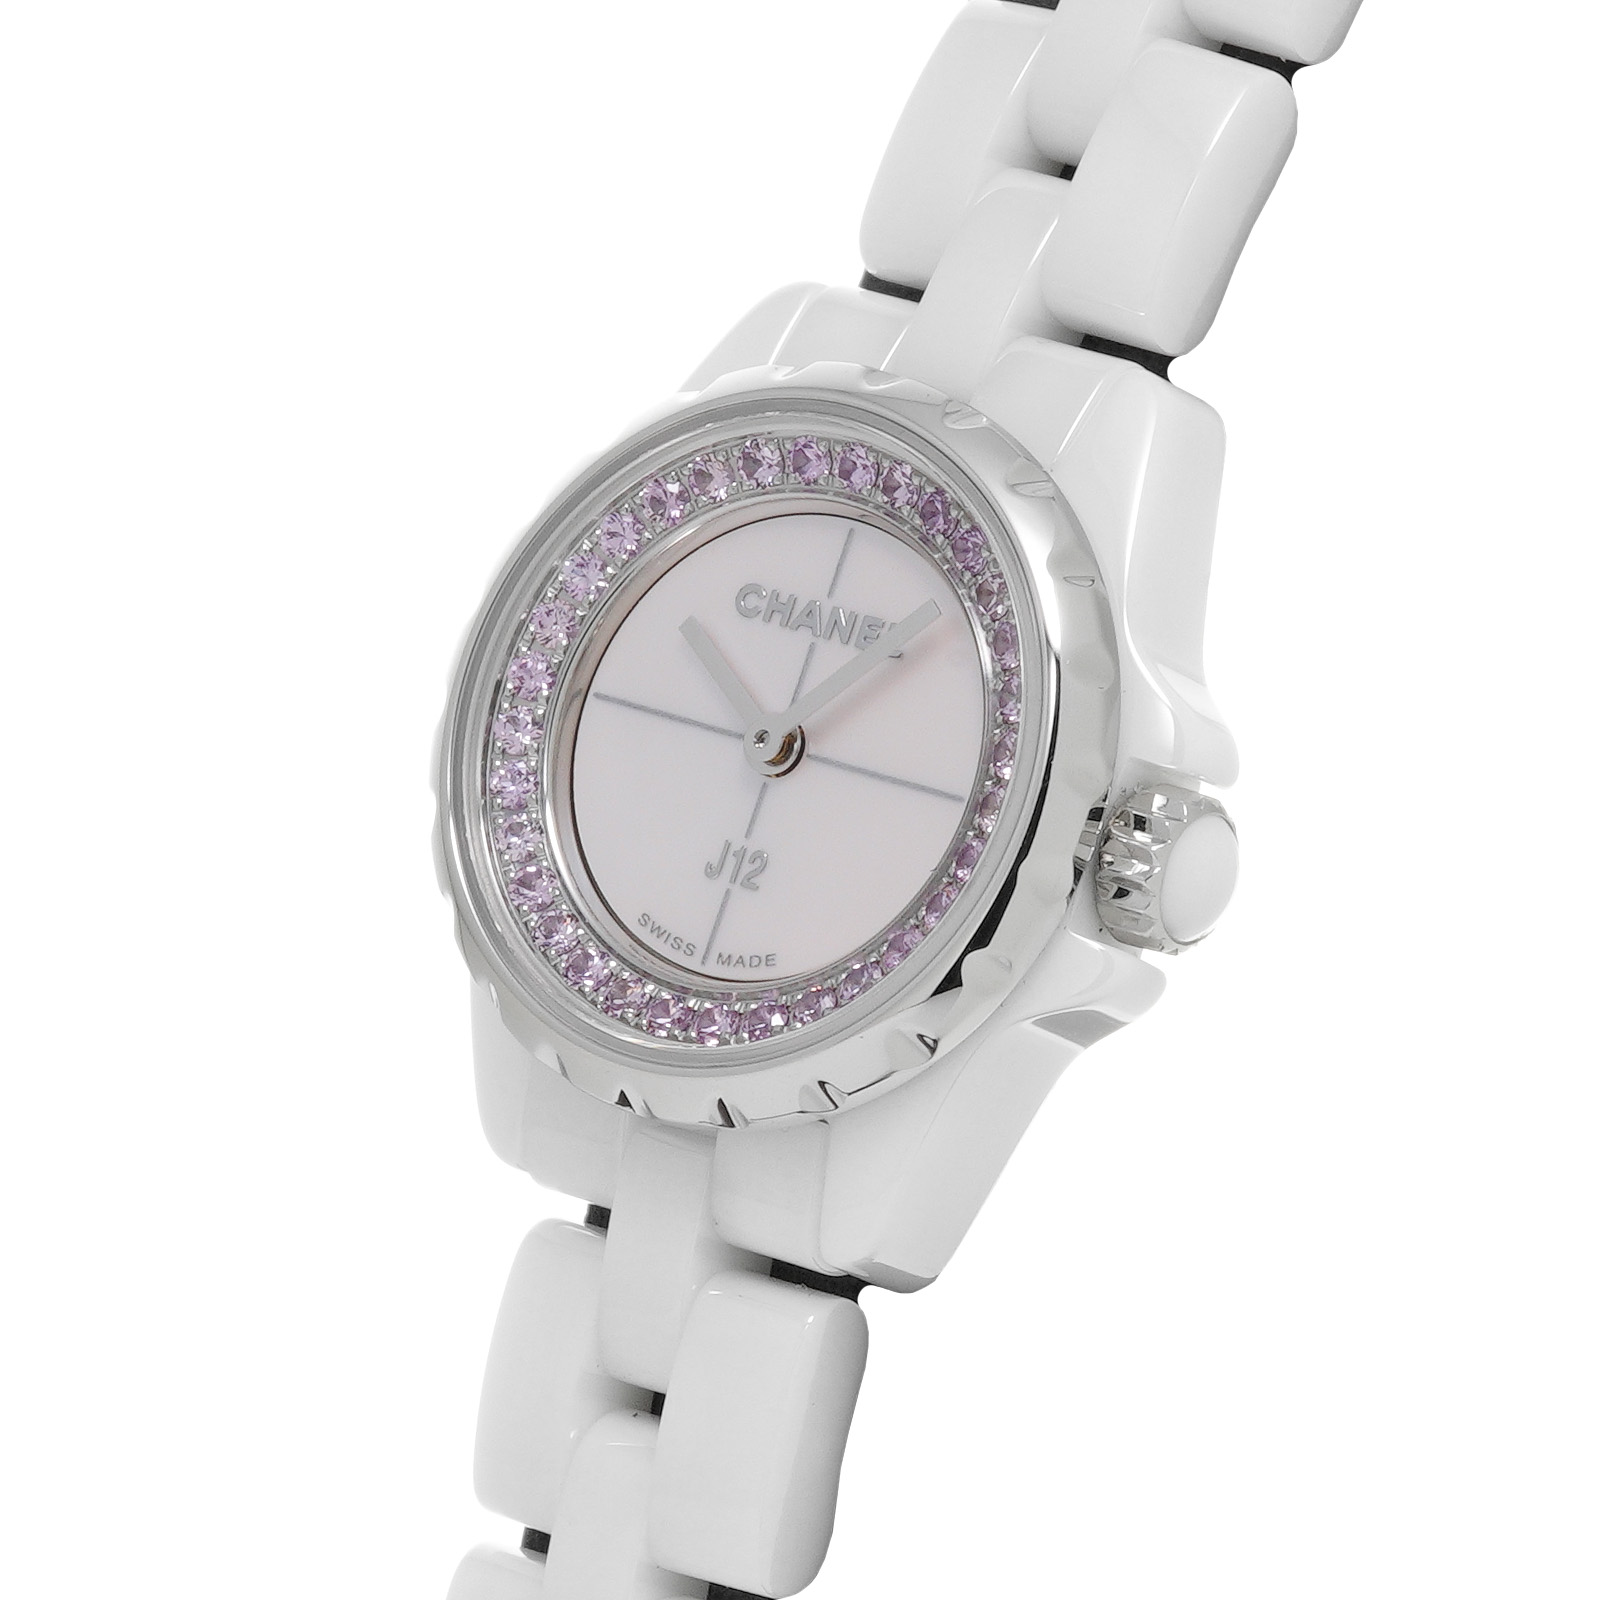 中古 シャネル CHANEL H5512 ピンクシェル /サファイア レディース 腕時計 腕時計 最安値特売